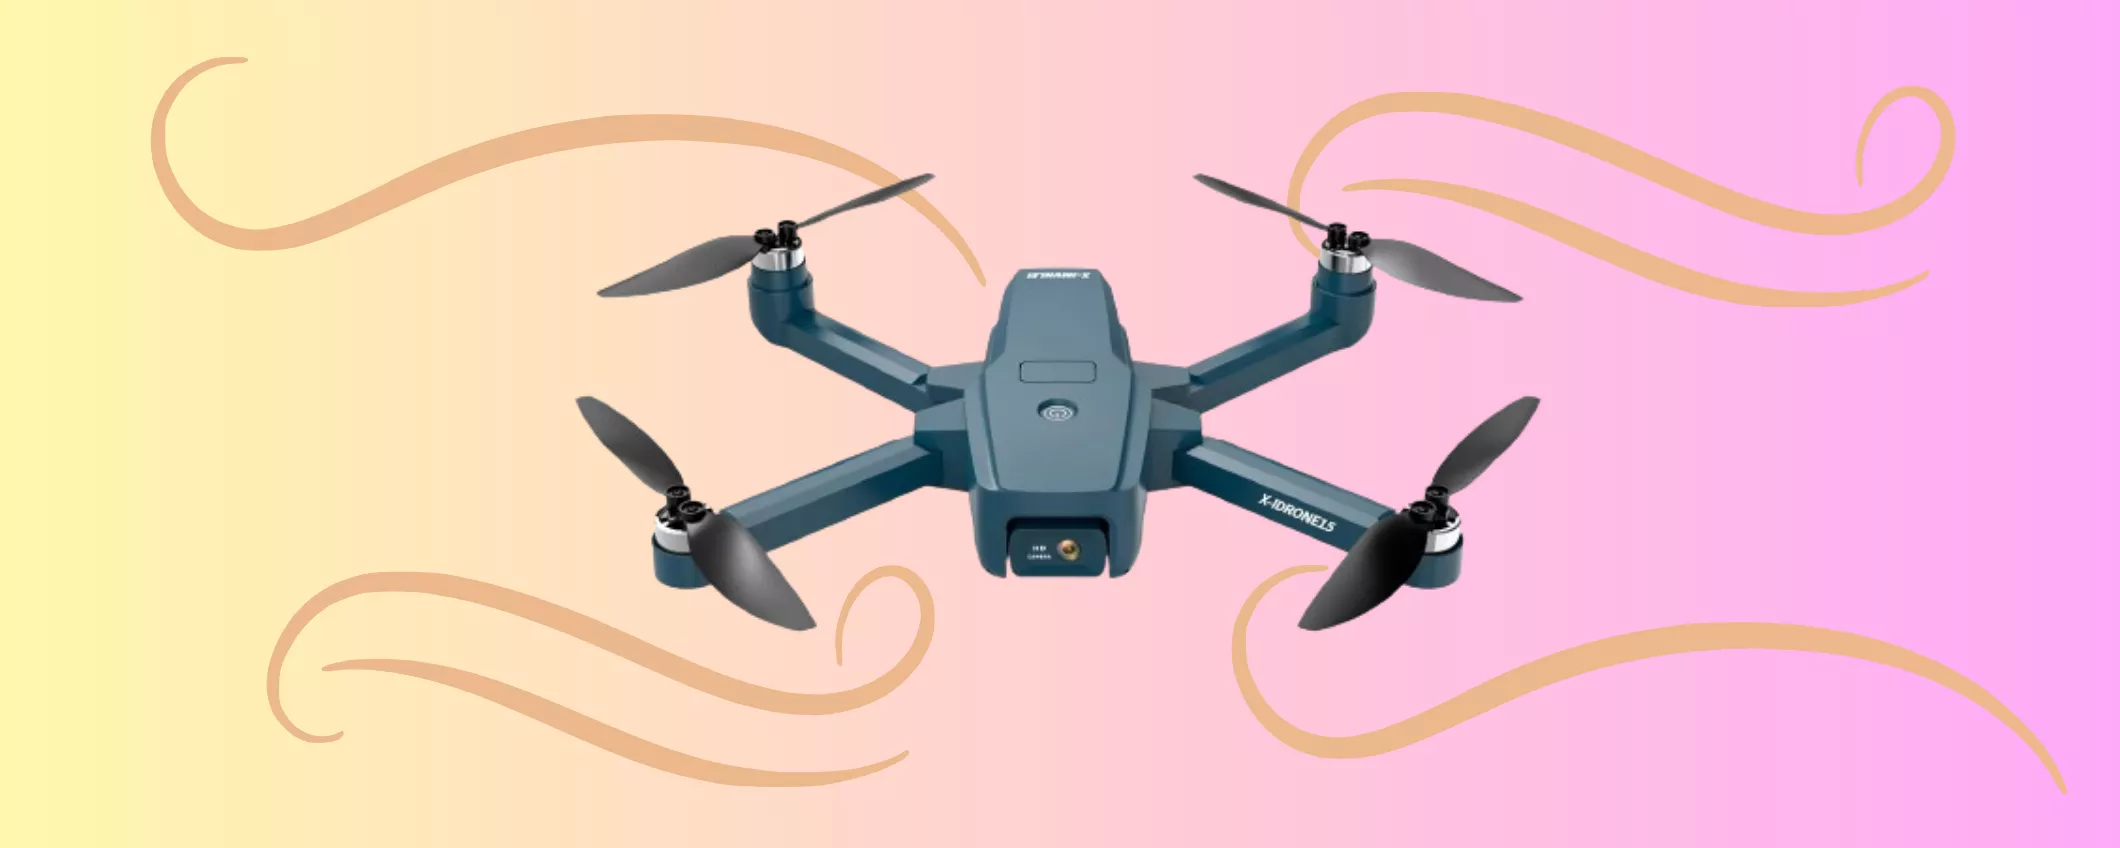 Mini drone che IMMORTALA le tue avventure estive a PREZZO SPECIALE